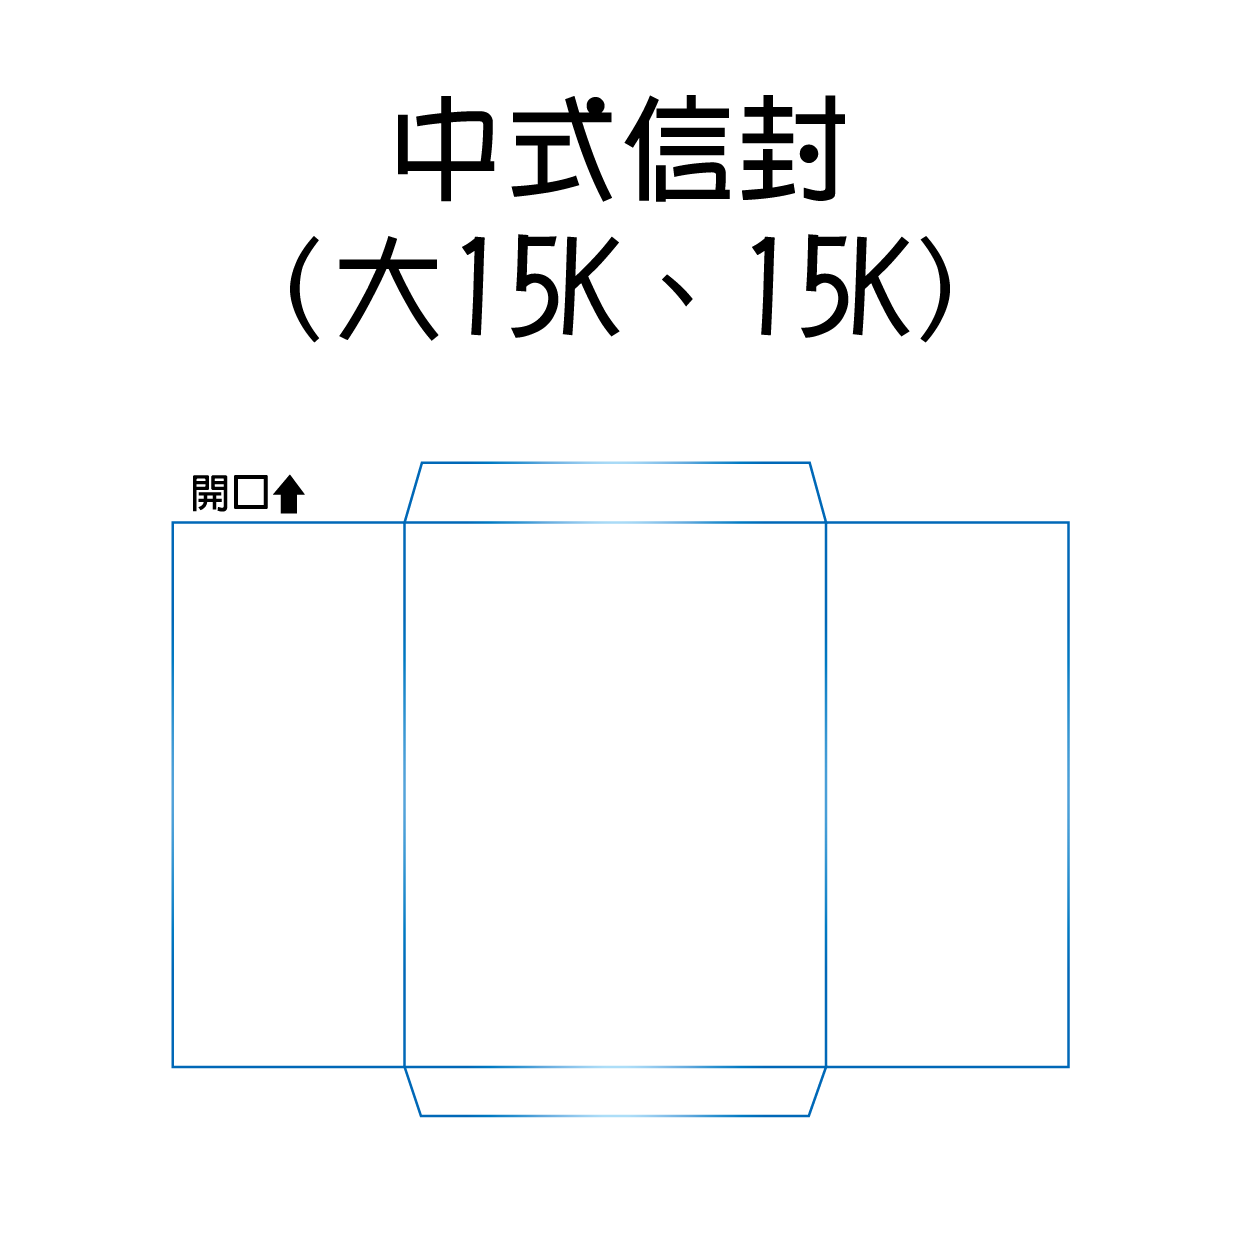 中式信封(大15K、15K)